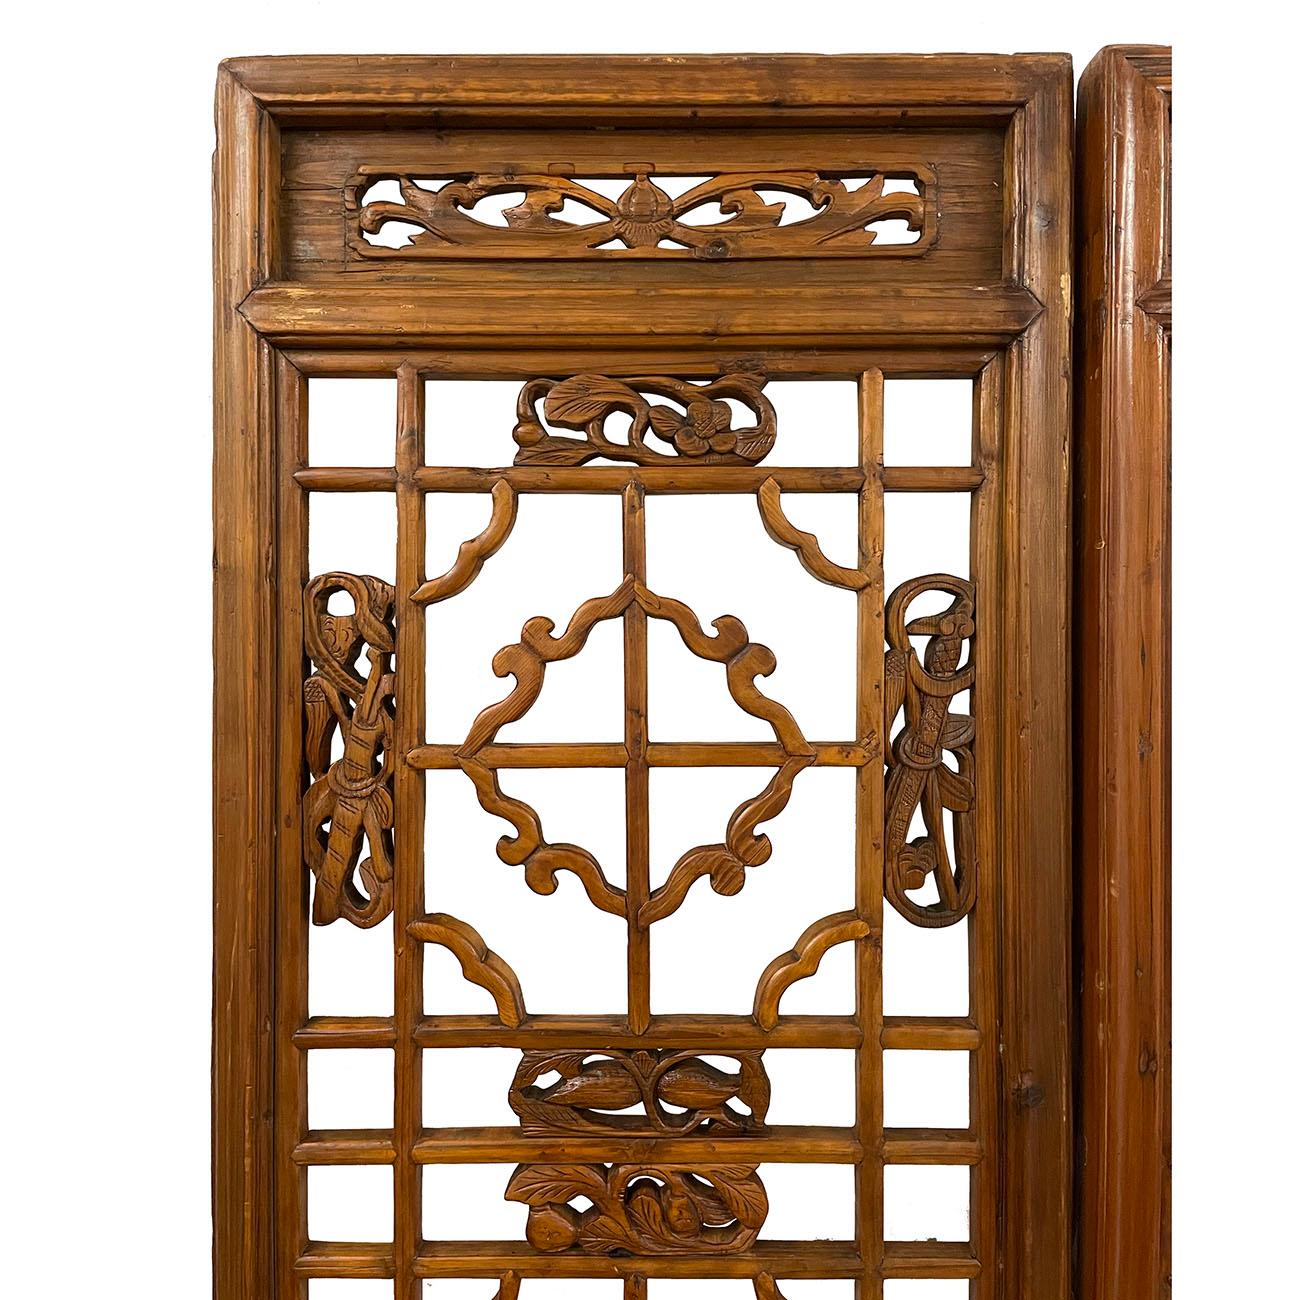 Il s'agit d'un ensemble de 3 panneaux en bois sculpté chinois anciennement ouvert qui était utilisé pour la séparation intérieure / panneaux de porte dans la Chine ancienne qui sont mis ensemble pour faire un écran. Les paravents sont connus pour